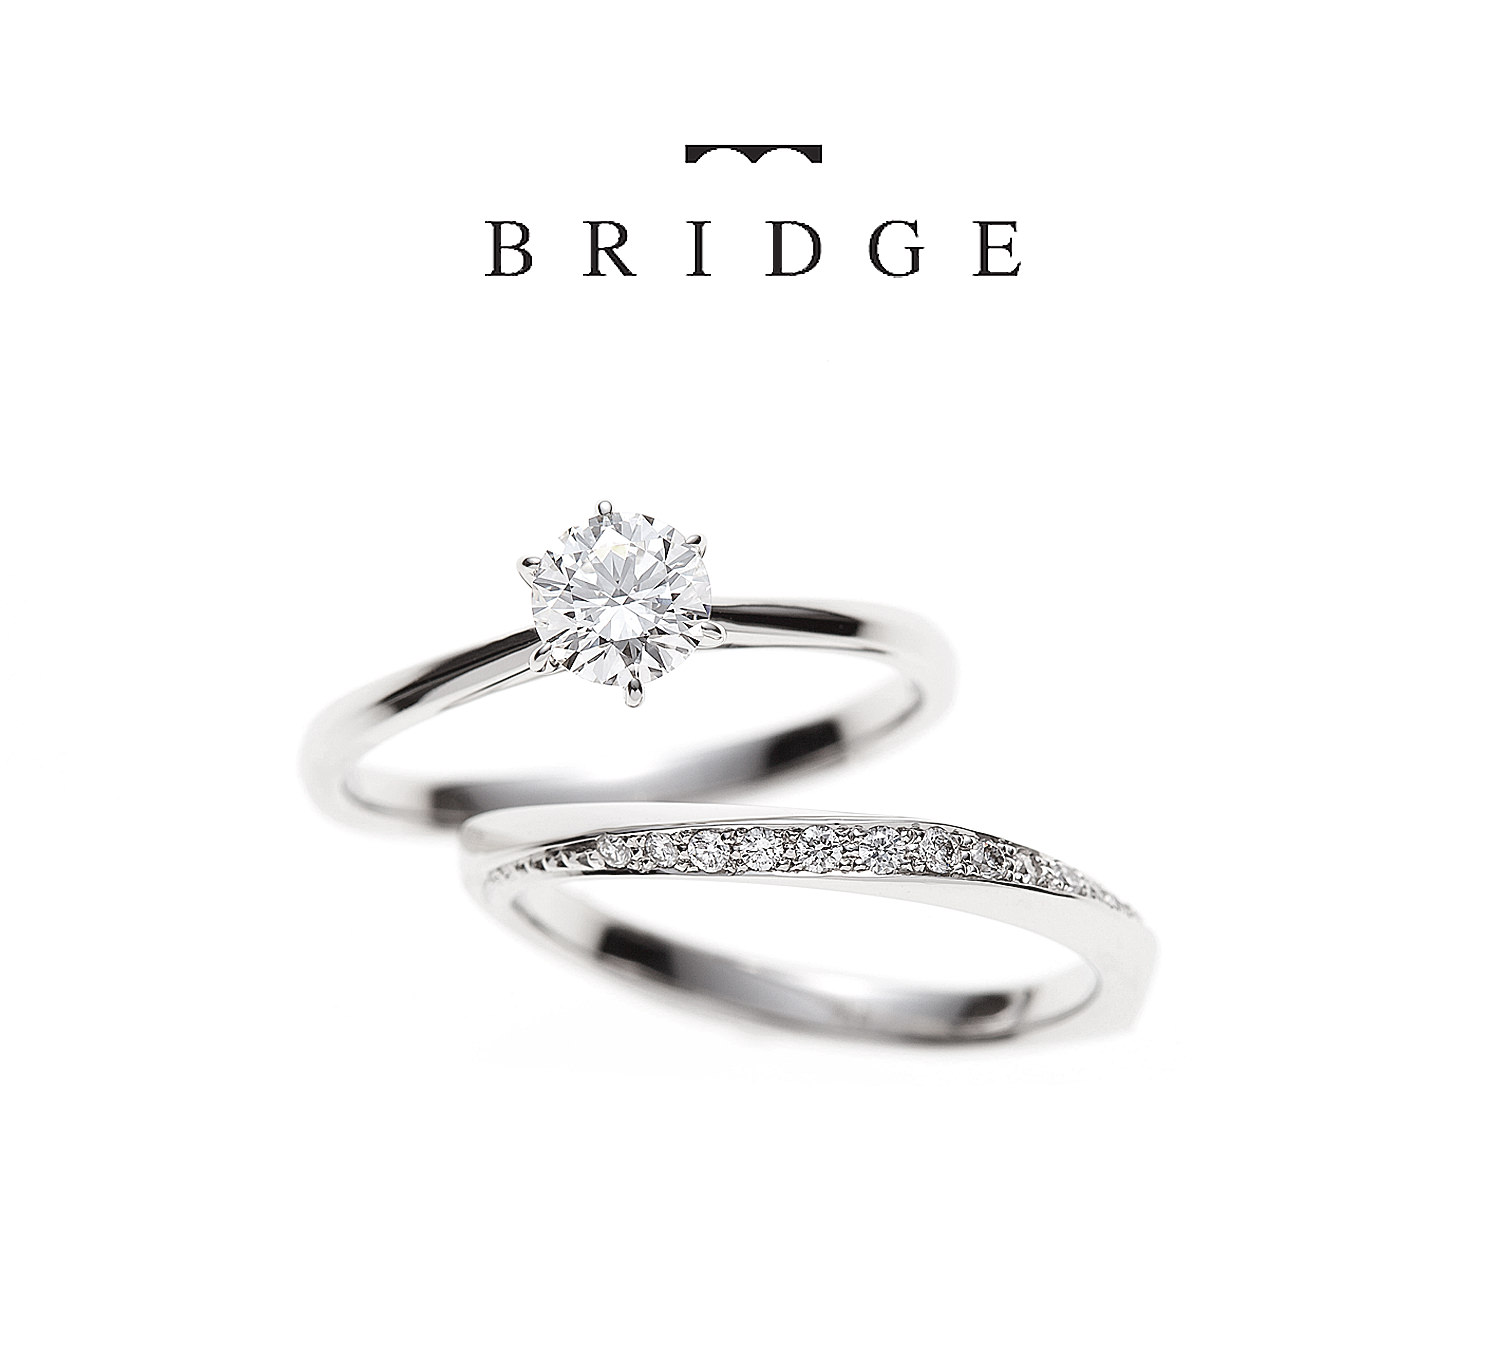 広島県広島広島市福山福山市のVANillAヴァニラの婚約指輪エンゲージリングと結婚指輪マリッジリングのBRIDGEブリッジ